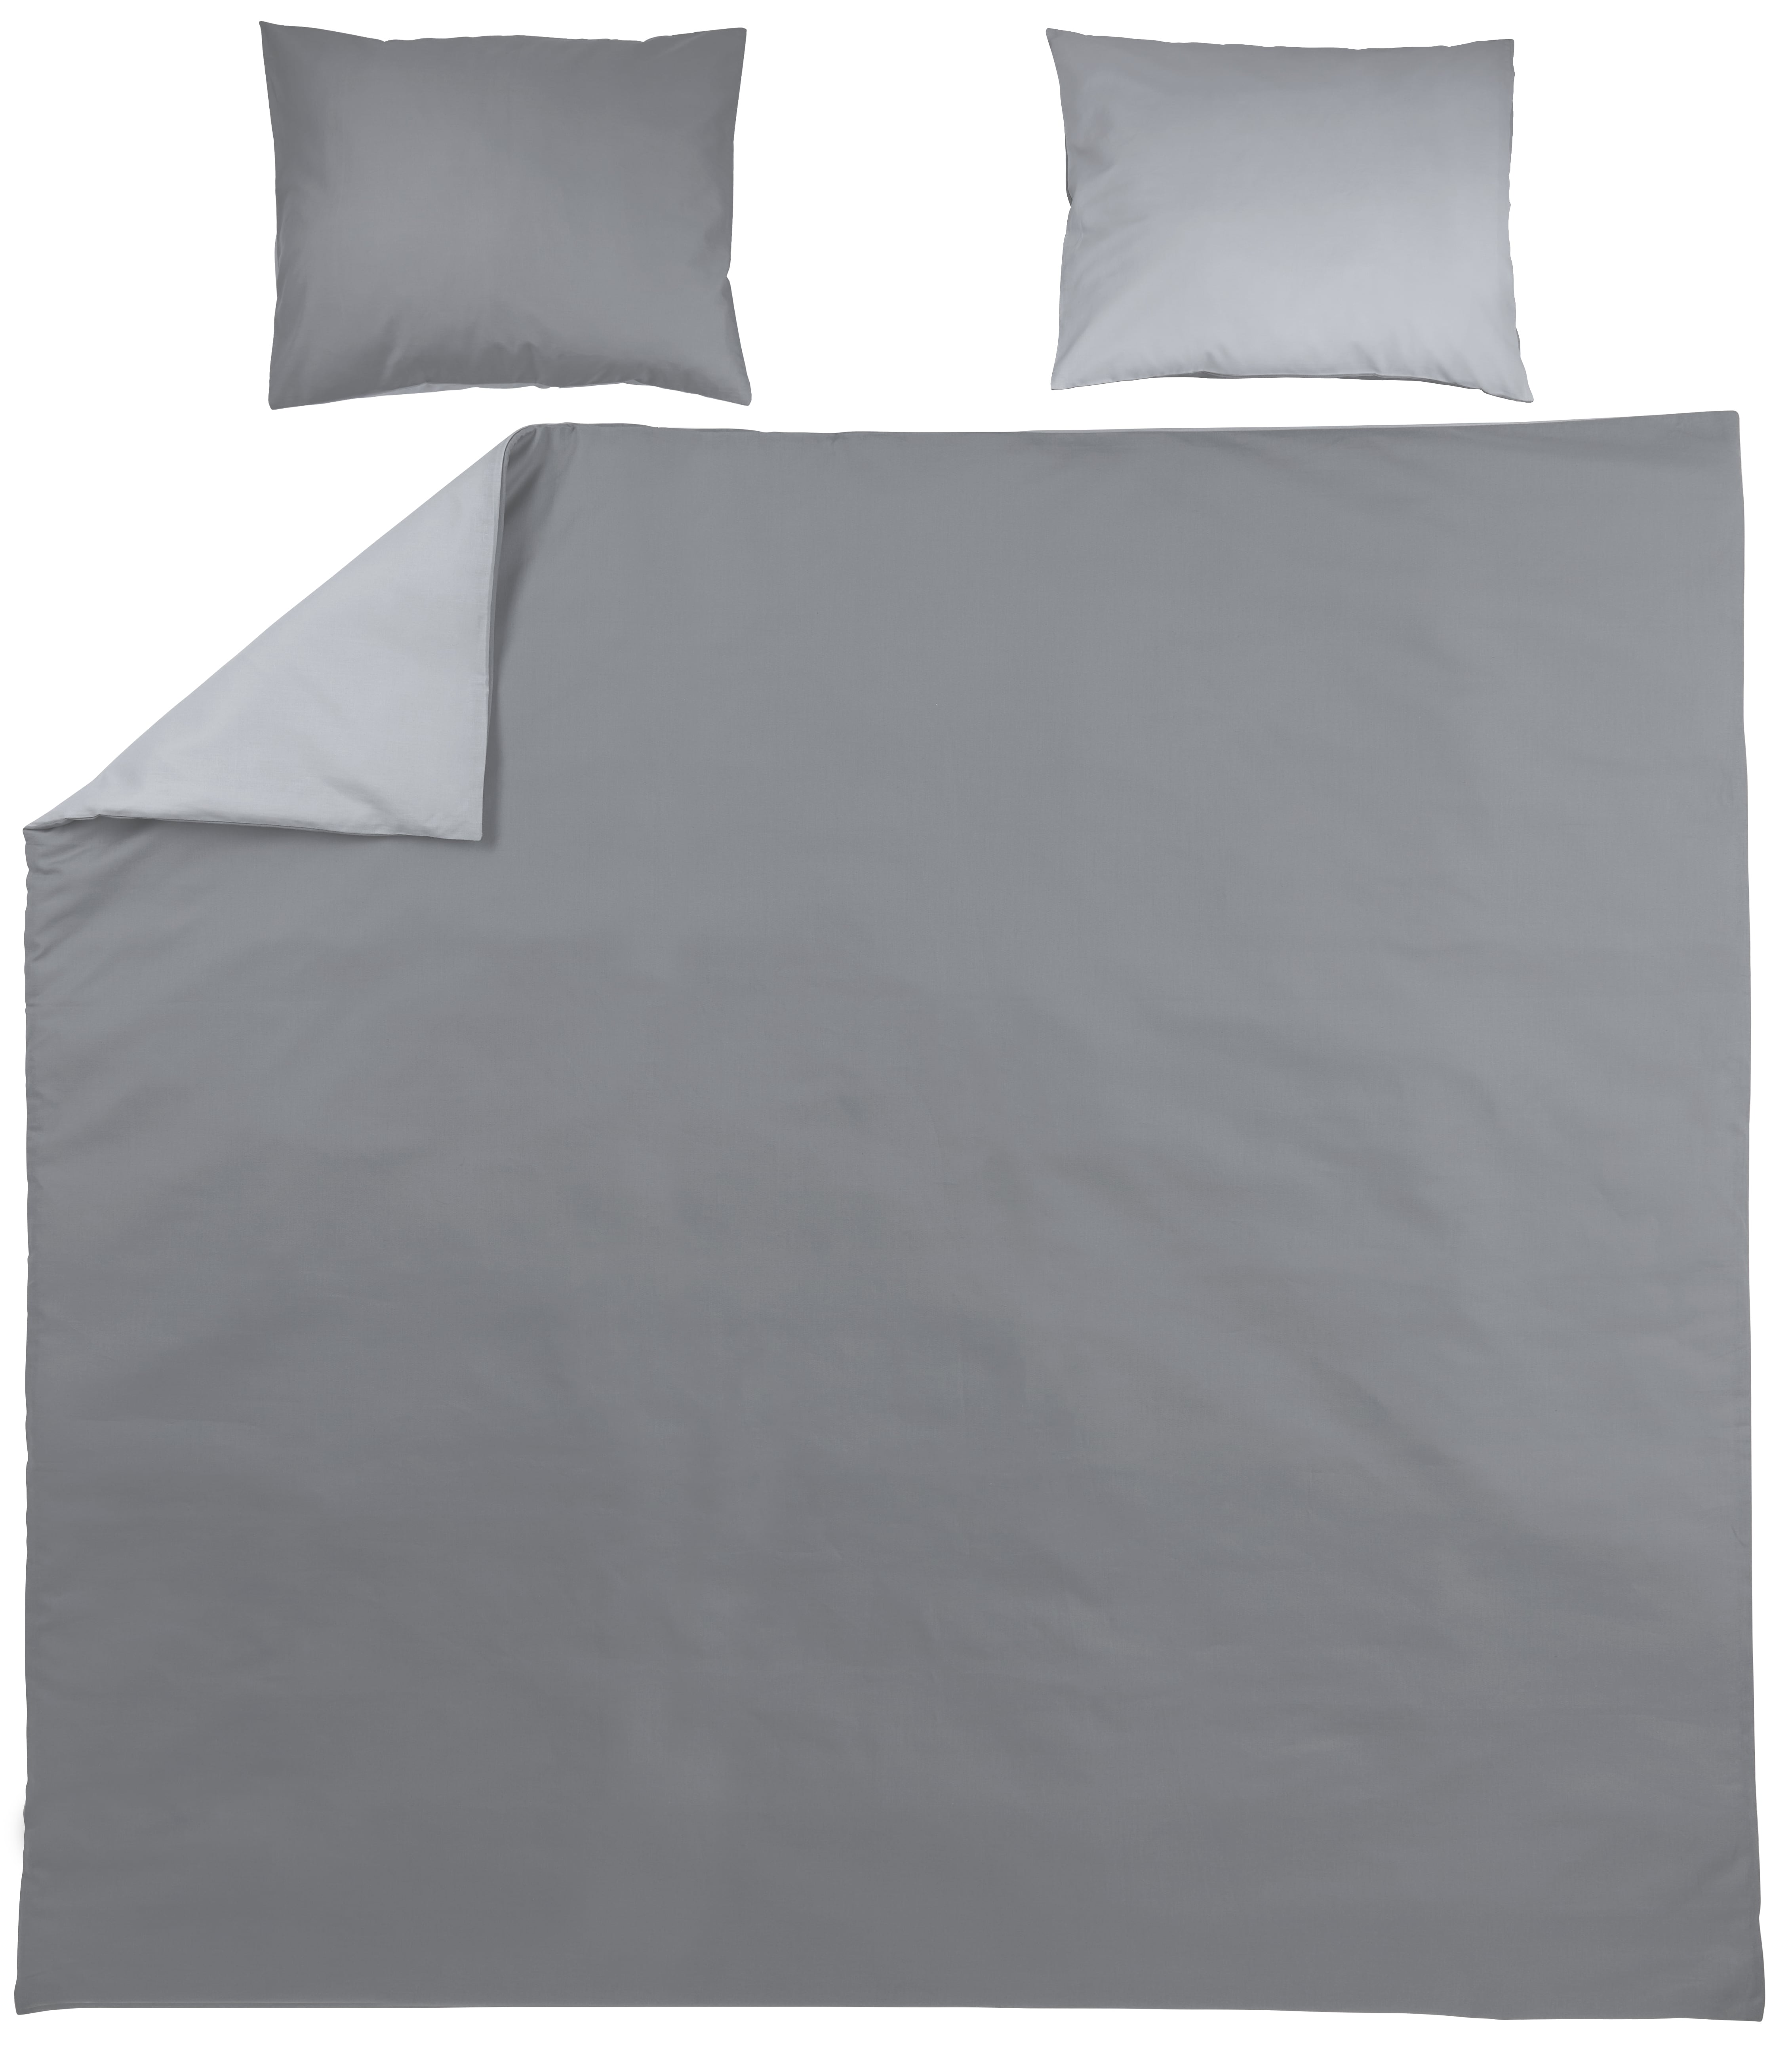 Dekbedovertrek 2-persoons Uni Grey/Light Grey (240x200/220cm)